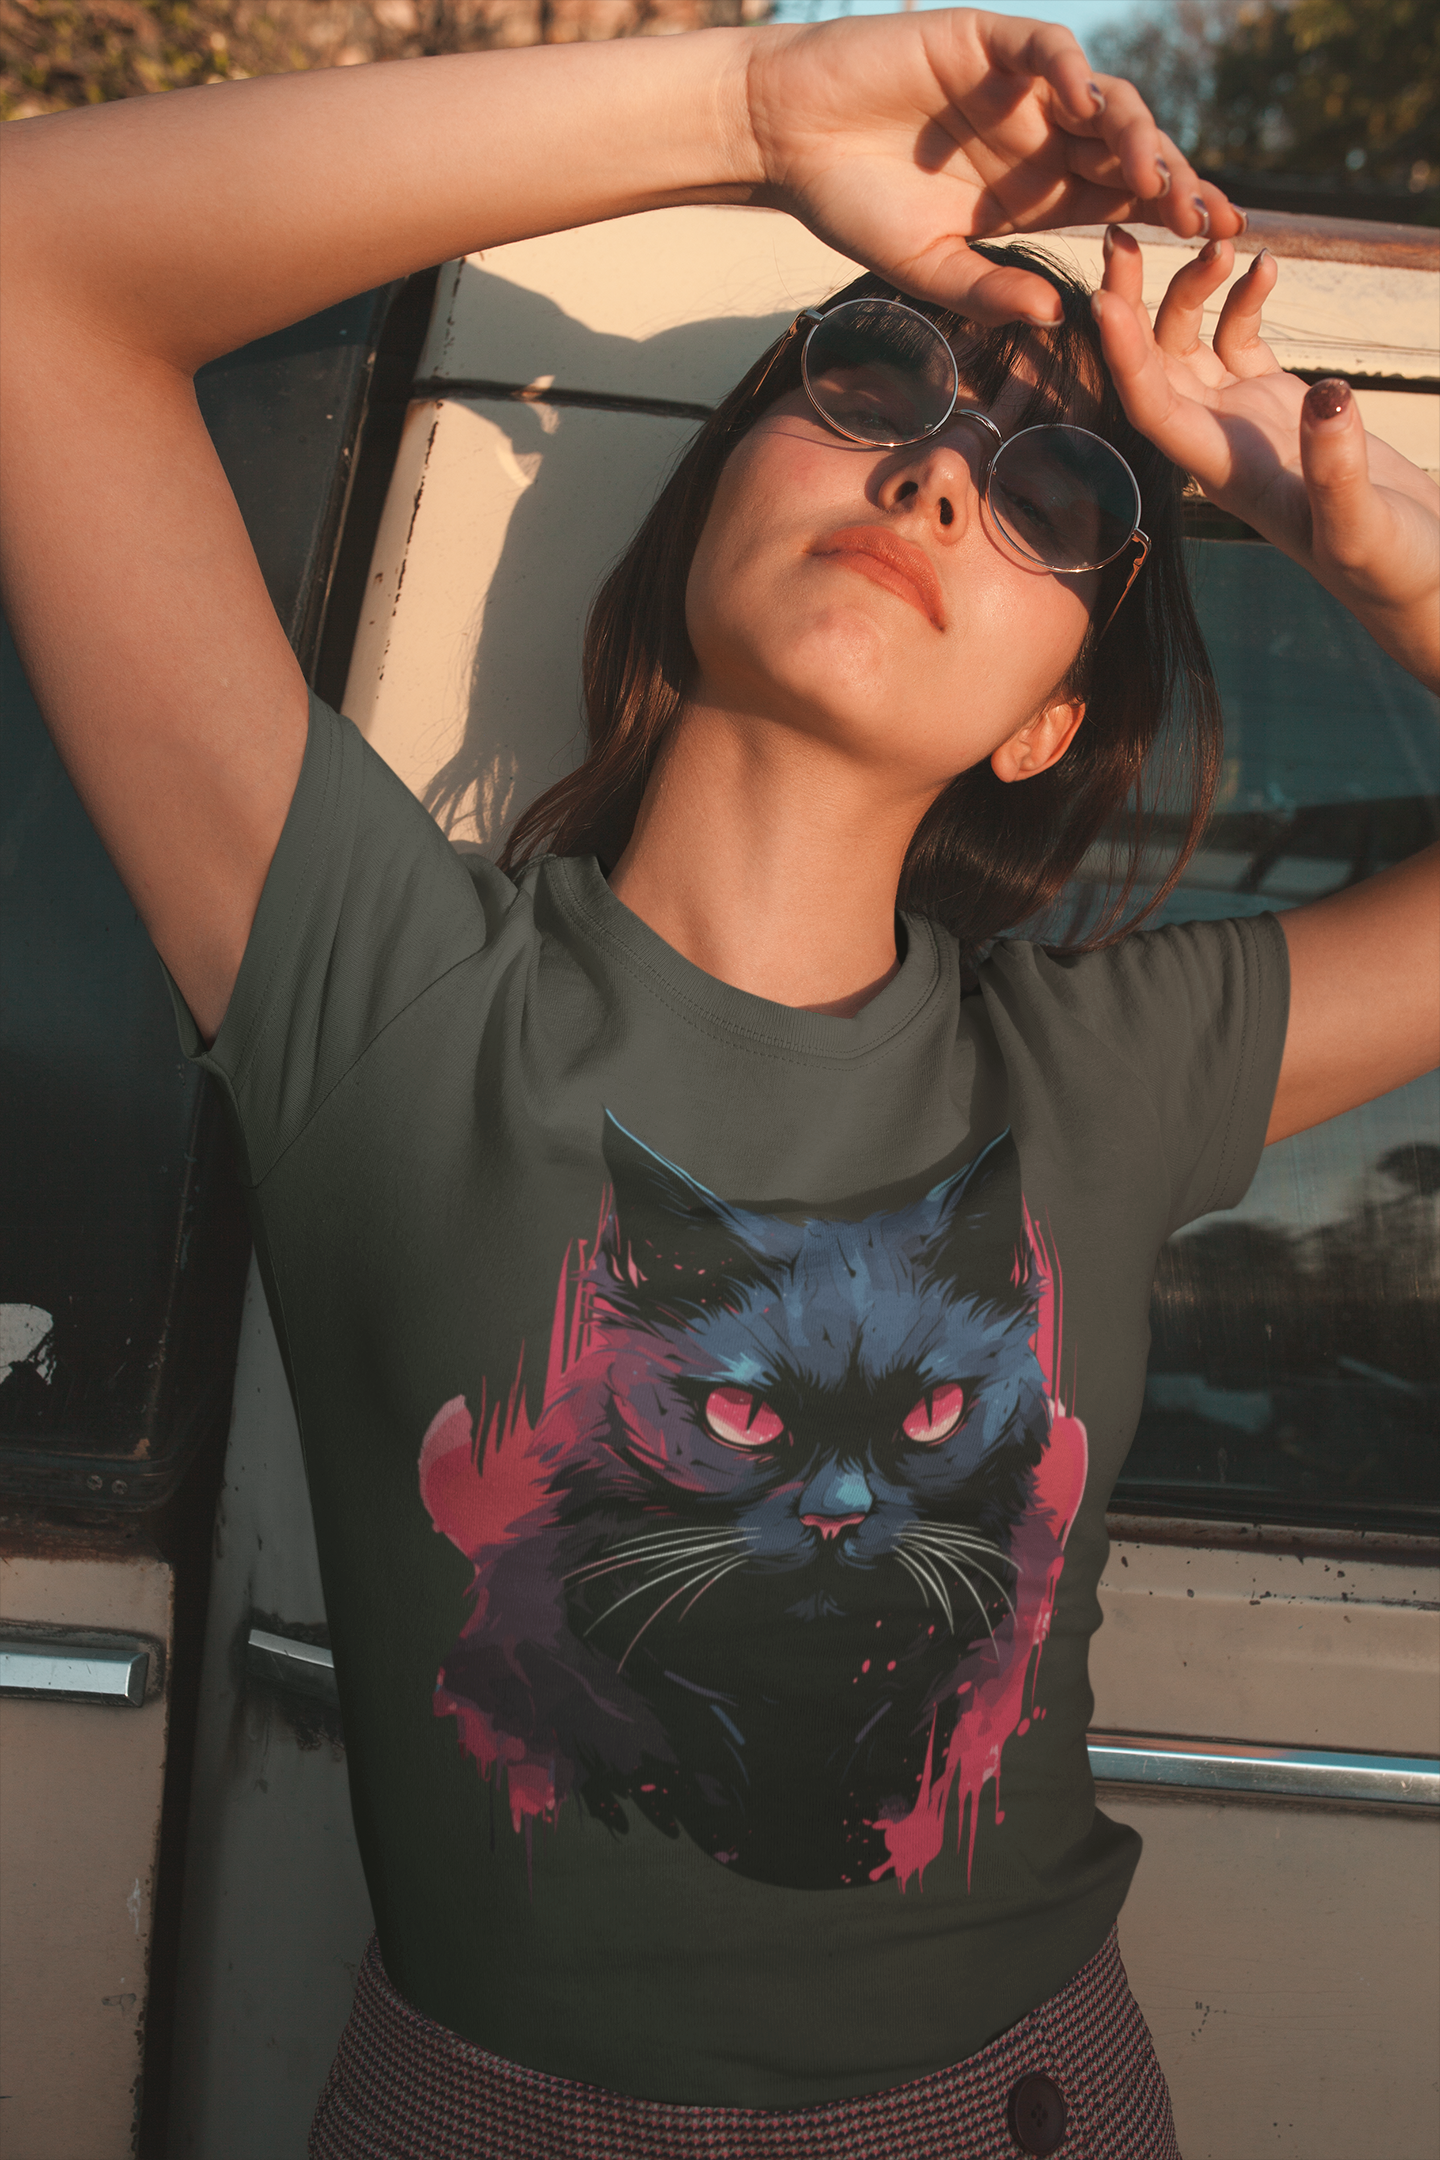 Dark Cat - Frauen T-Shirt